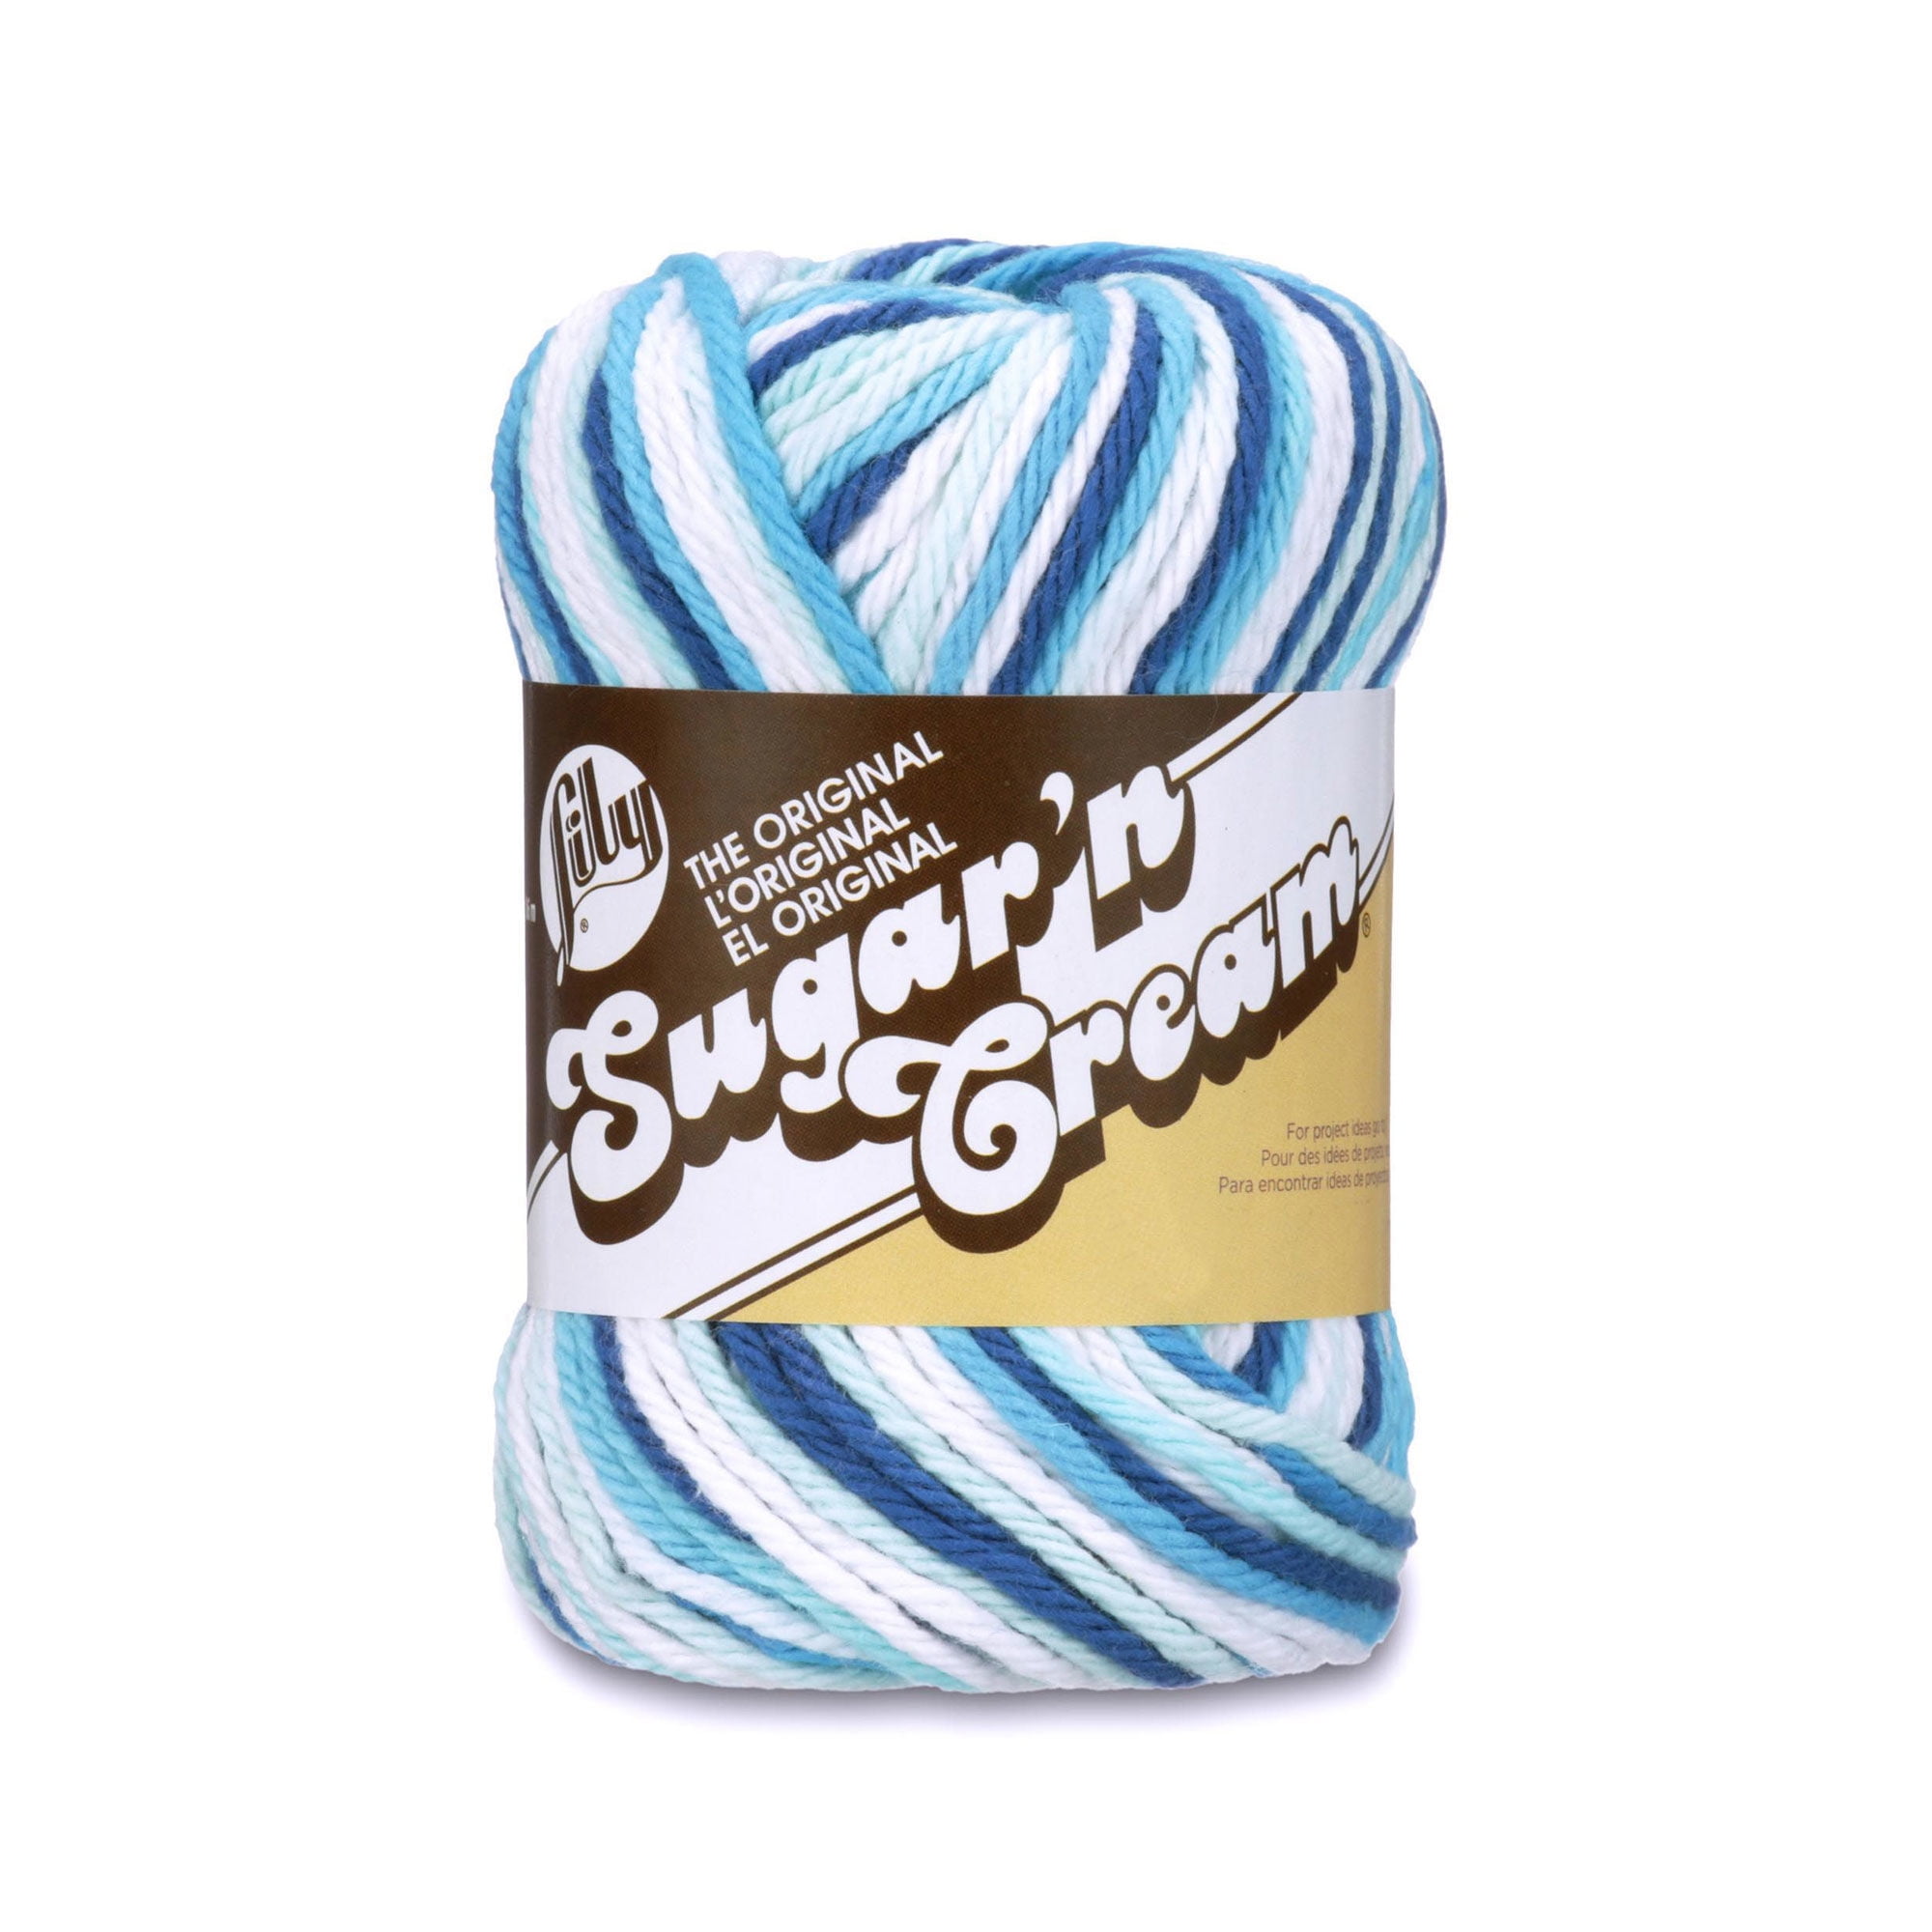 Lily Sugar'N Cream Sunrise Yarn - 6 Pack of 57g/2oz - Cotton - 4